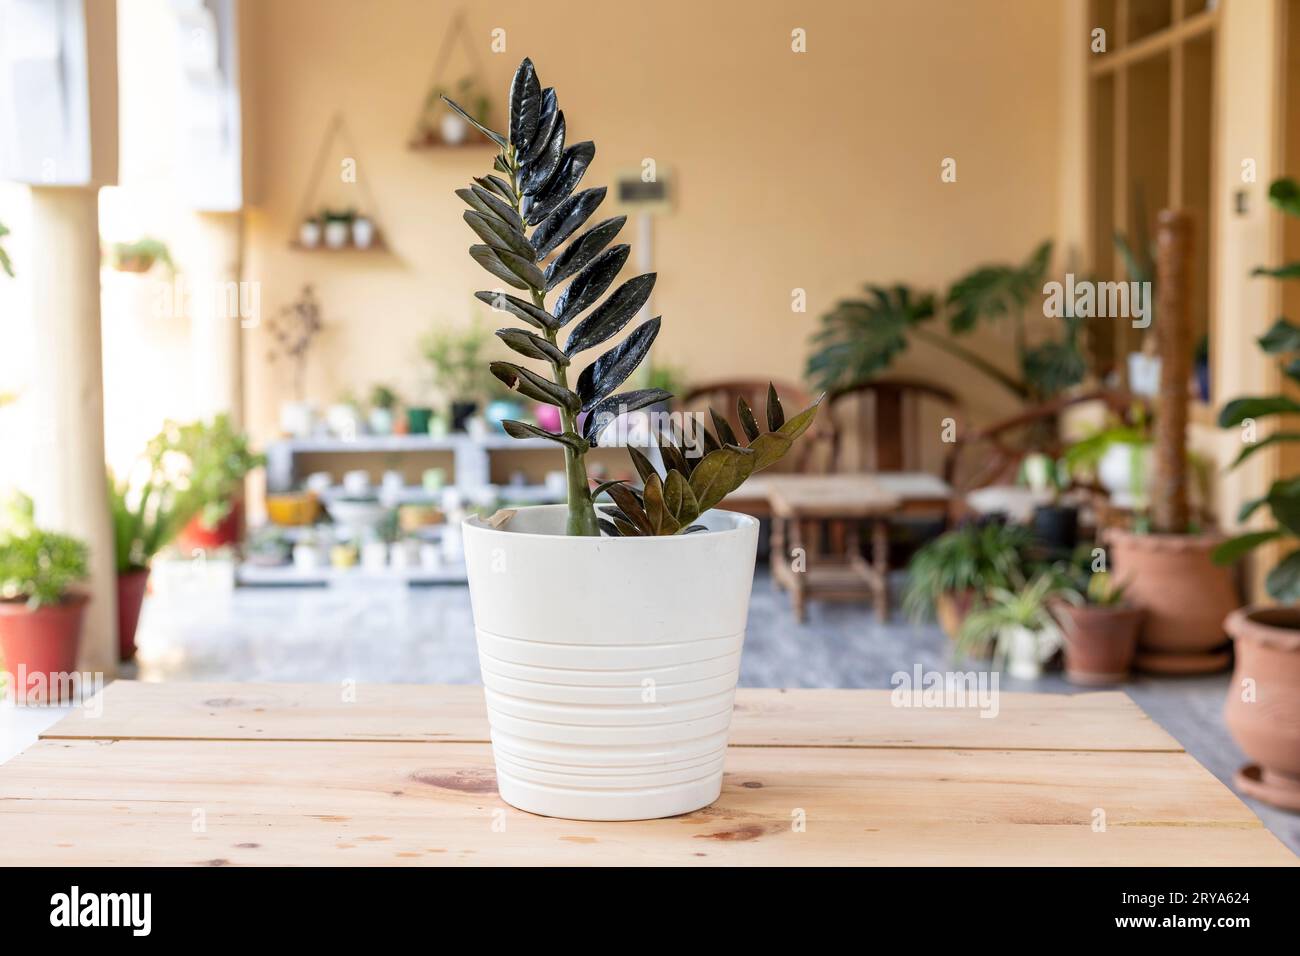 Black Zamioculcas Zamiifolia plant in a white ceramic pot Stock Photo